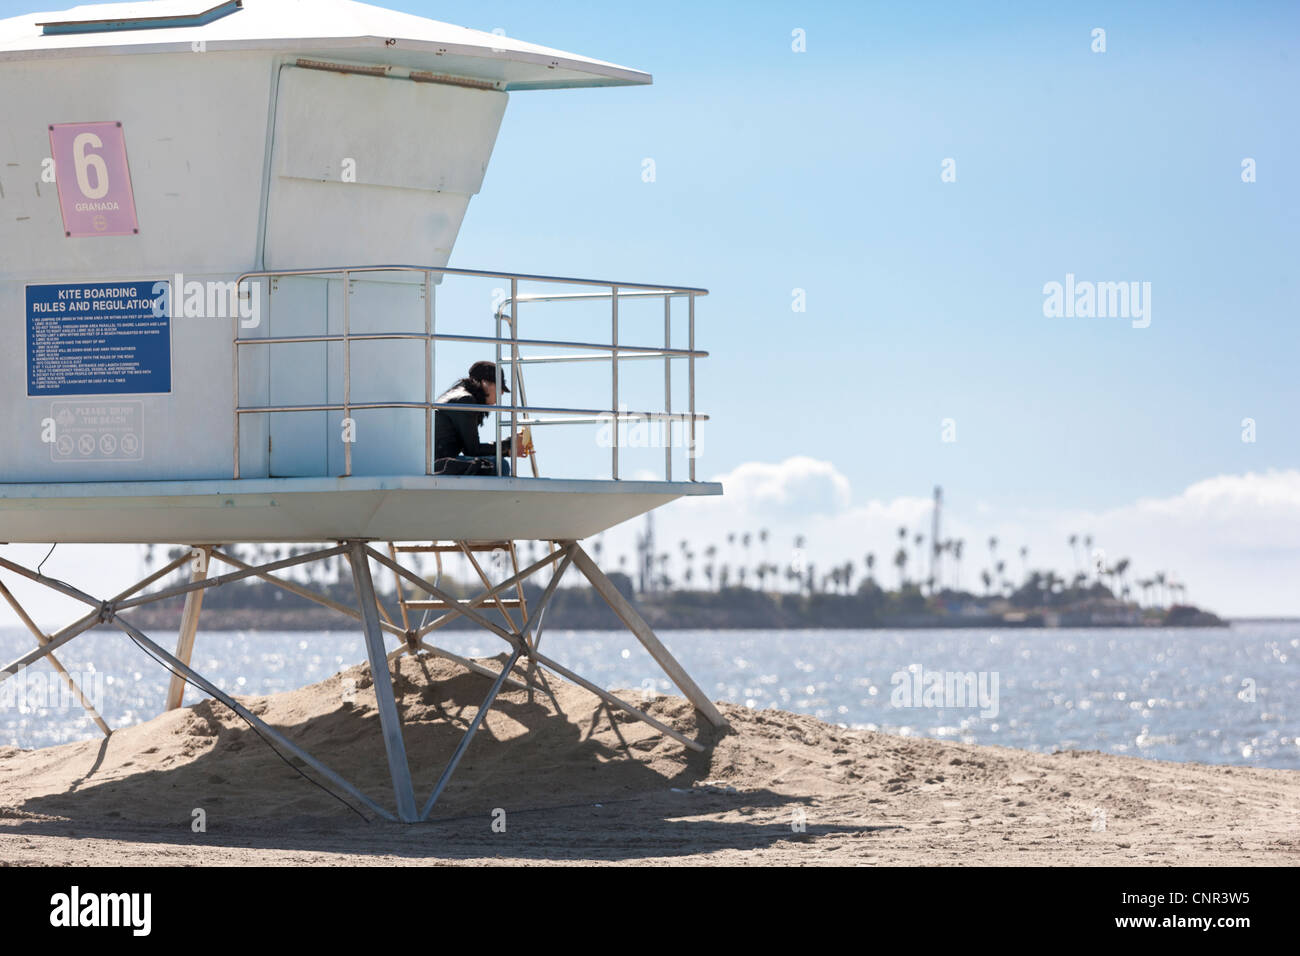 Garde vie lifeguard hut station à Long Beach CA CALIFORNIE Île avec un Chaffee déguisés de forage en mer avec des palmiers Banque D'Images